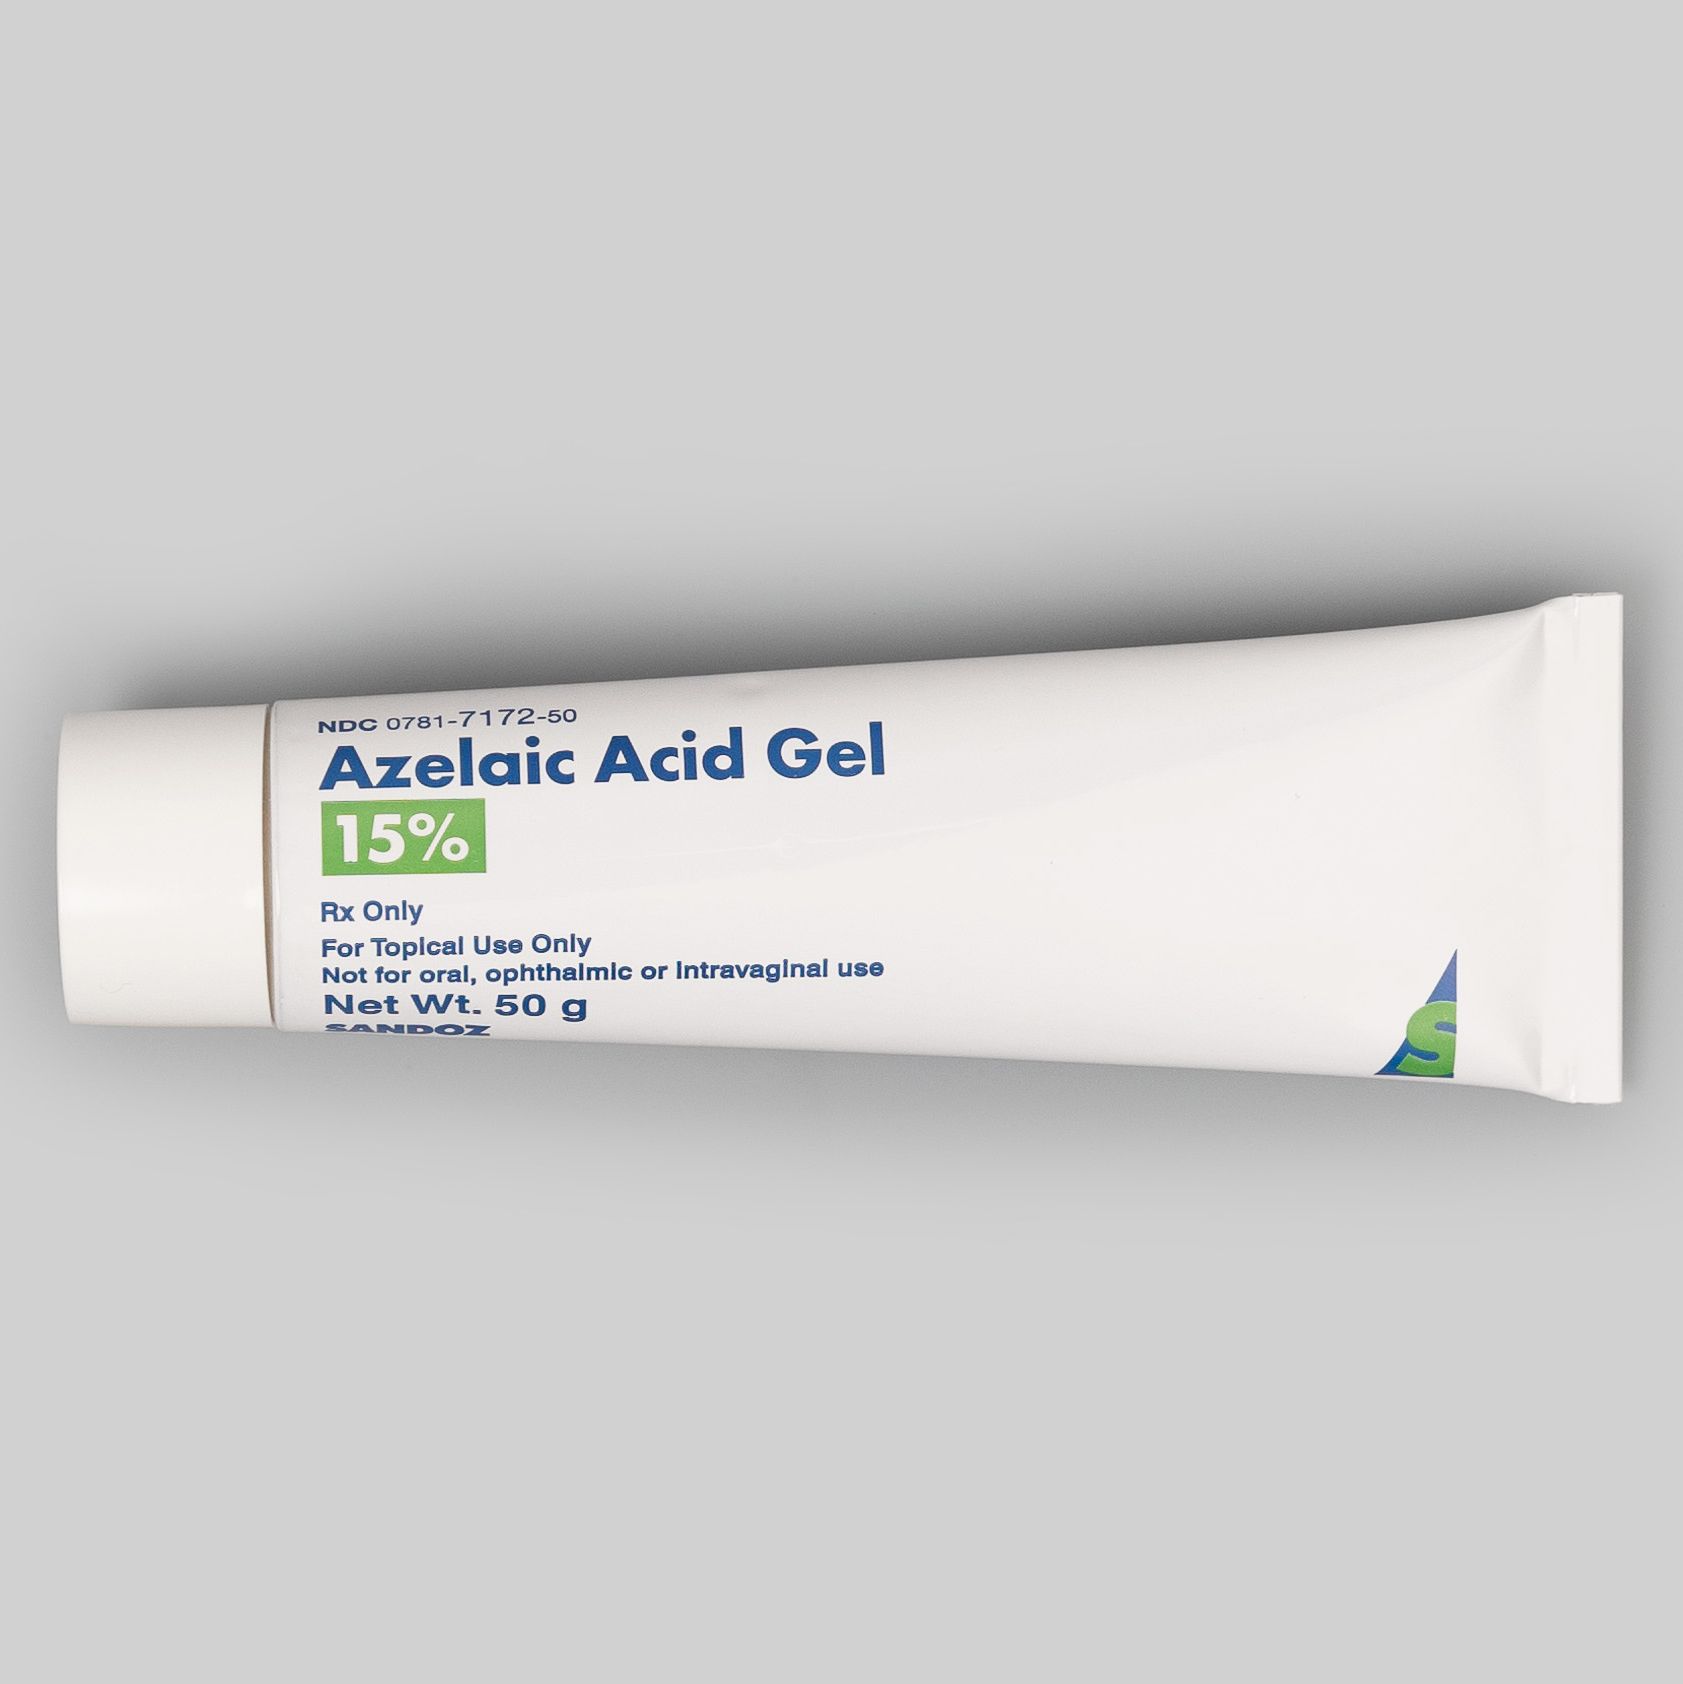 RedBox Rx Azelaic Acid 15% Gel Tube - 50 g